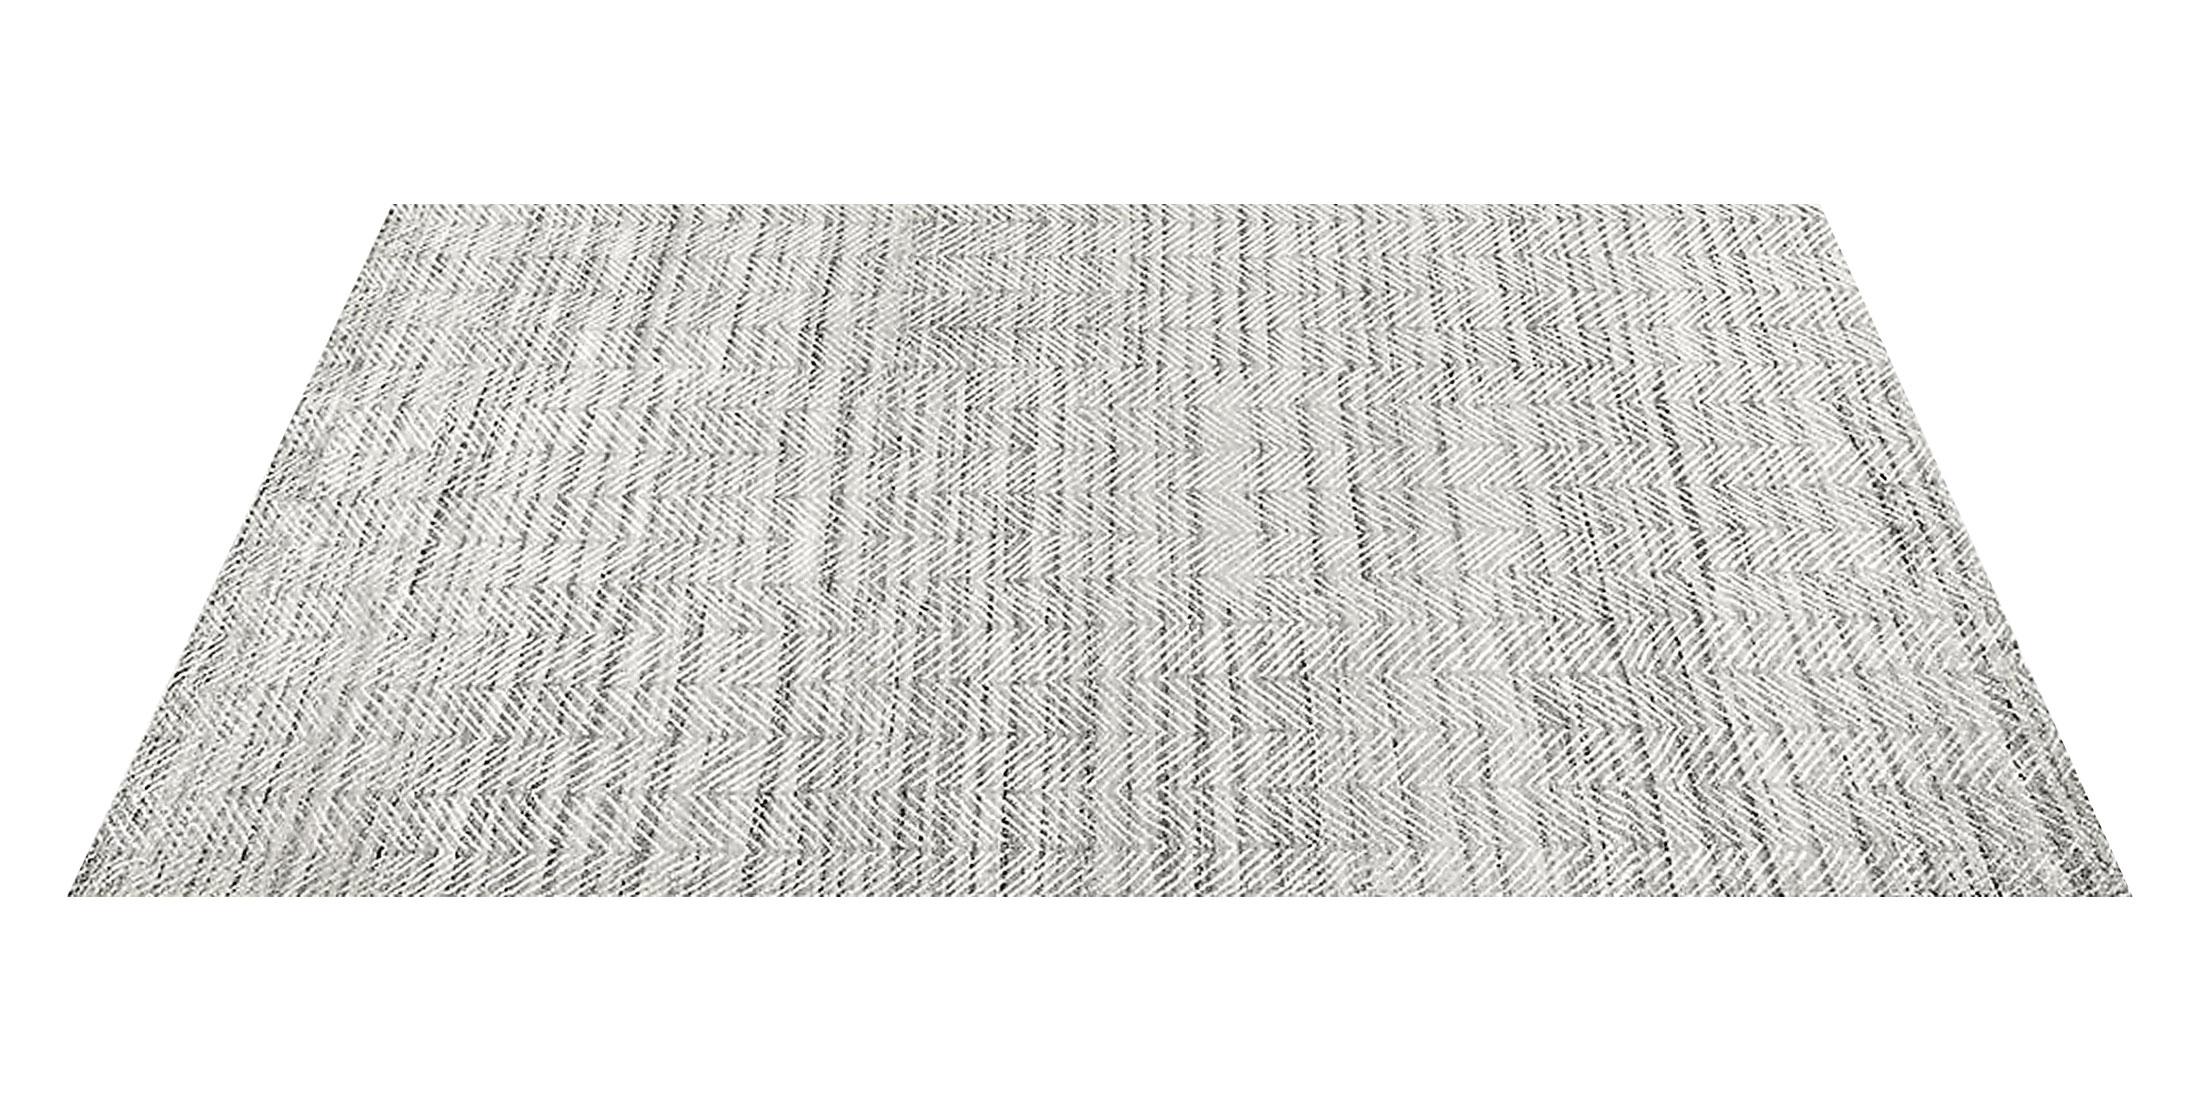 For Sale: Gray (Silver/White) Ben Soleimani Alia Rug– Hand-woven Chevron Wool + Viscose Black/Gray 9'x12' 2